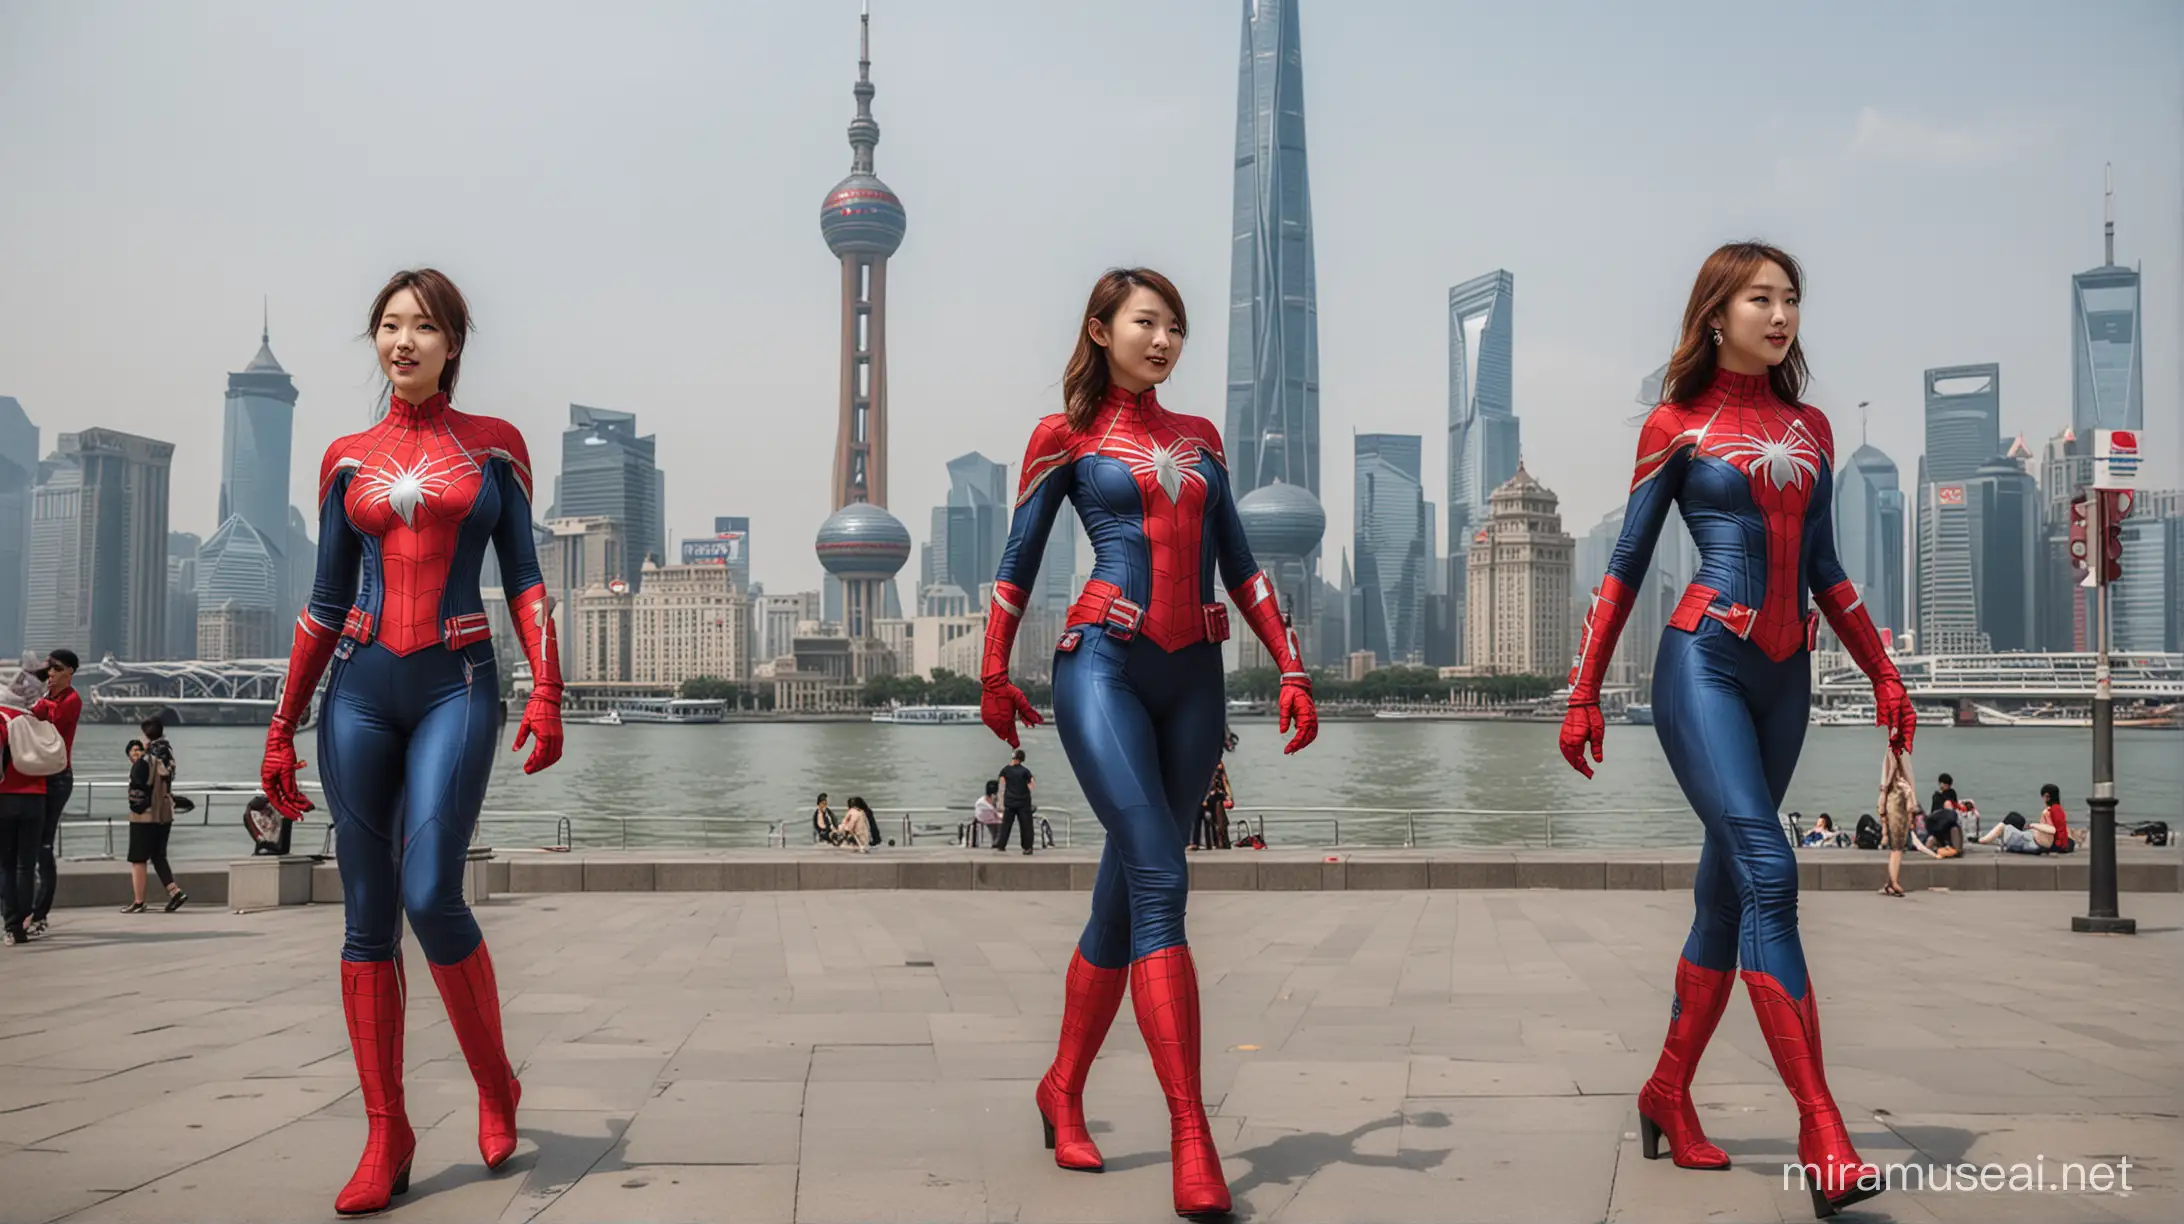 帮我画一张画，画中有2位女士，身穿美国队长制服，另外2个女士身穿蜘蛛侠制服，走在上海外滩边，背景有东方明珠，金茂大厦，上海中心以及环球金融中心和国际会议中心大楼